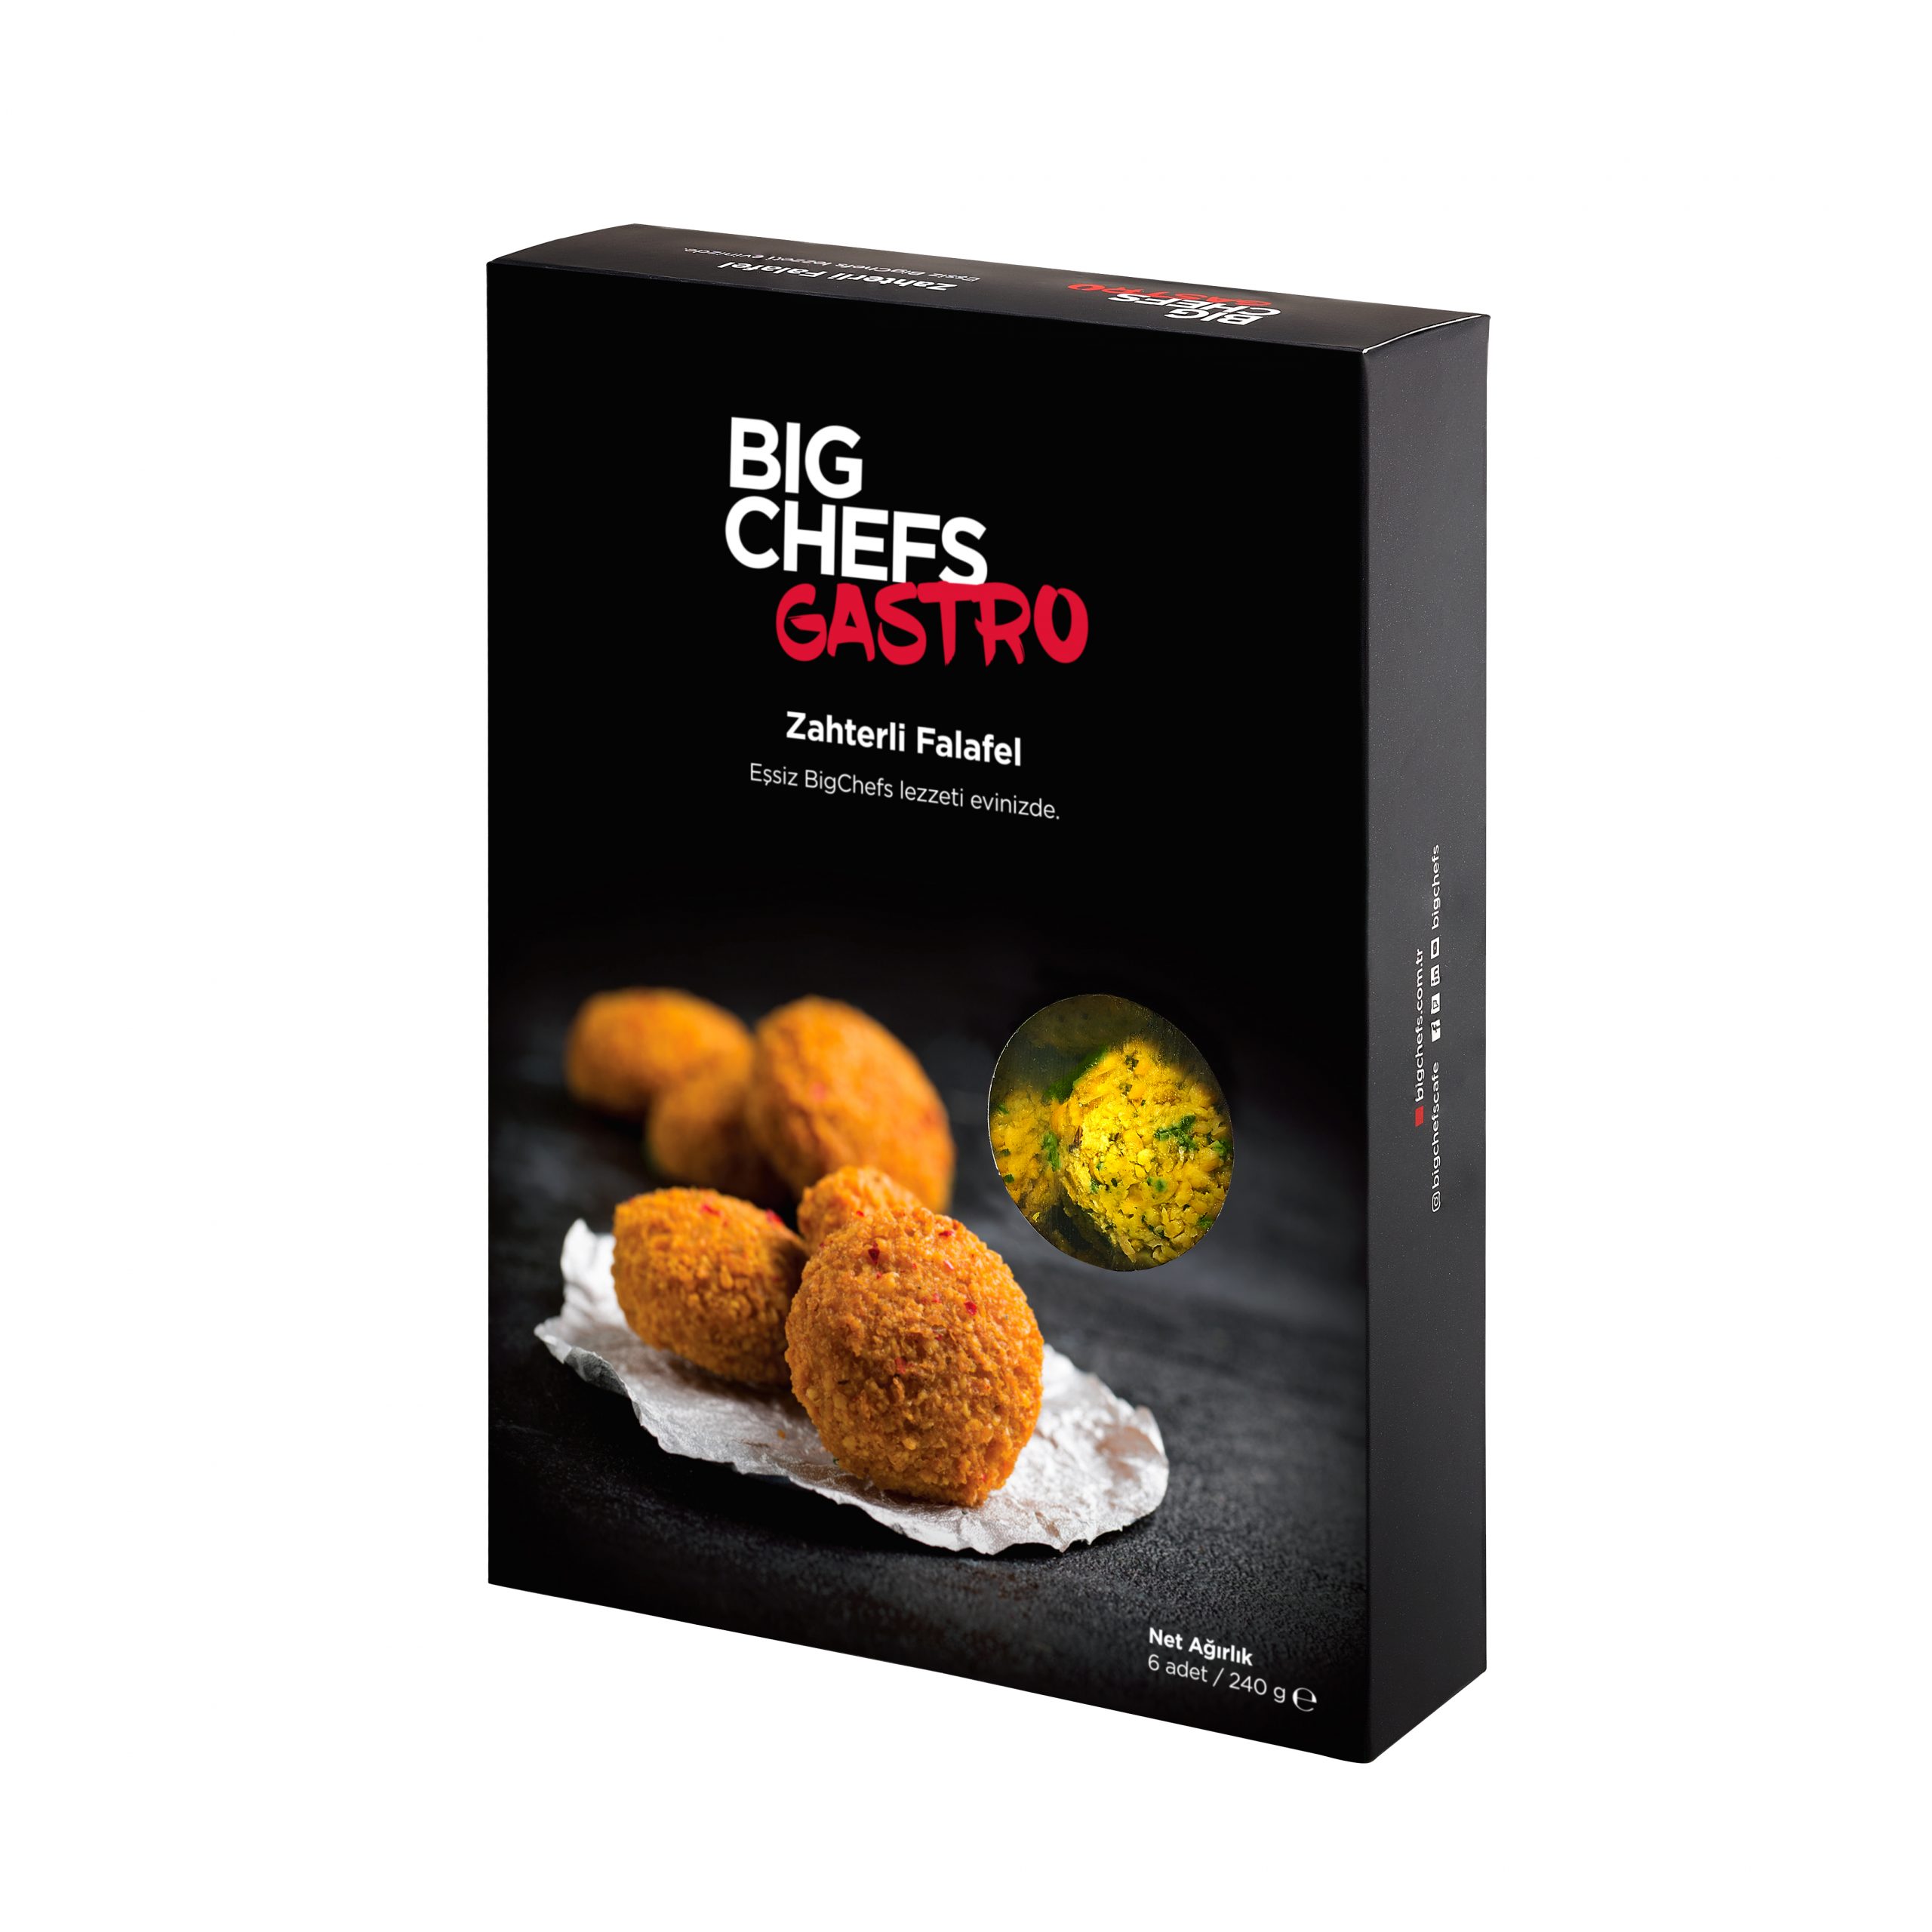 “BigChefs Gastro”nun eşsiz lezzetleriyle   mutfaklarda çok özel deneyim